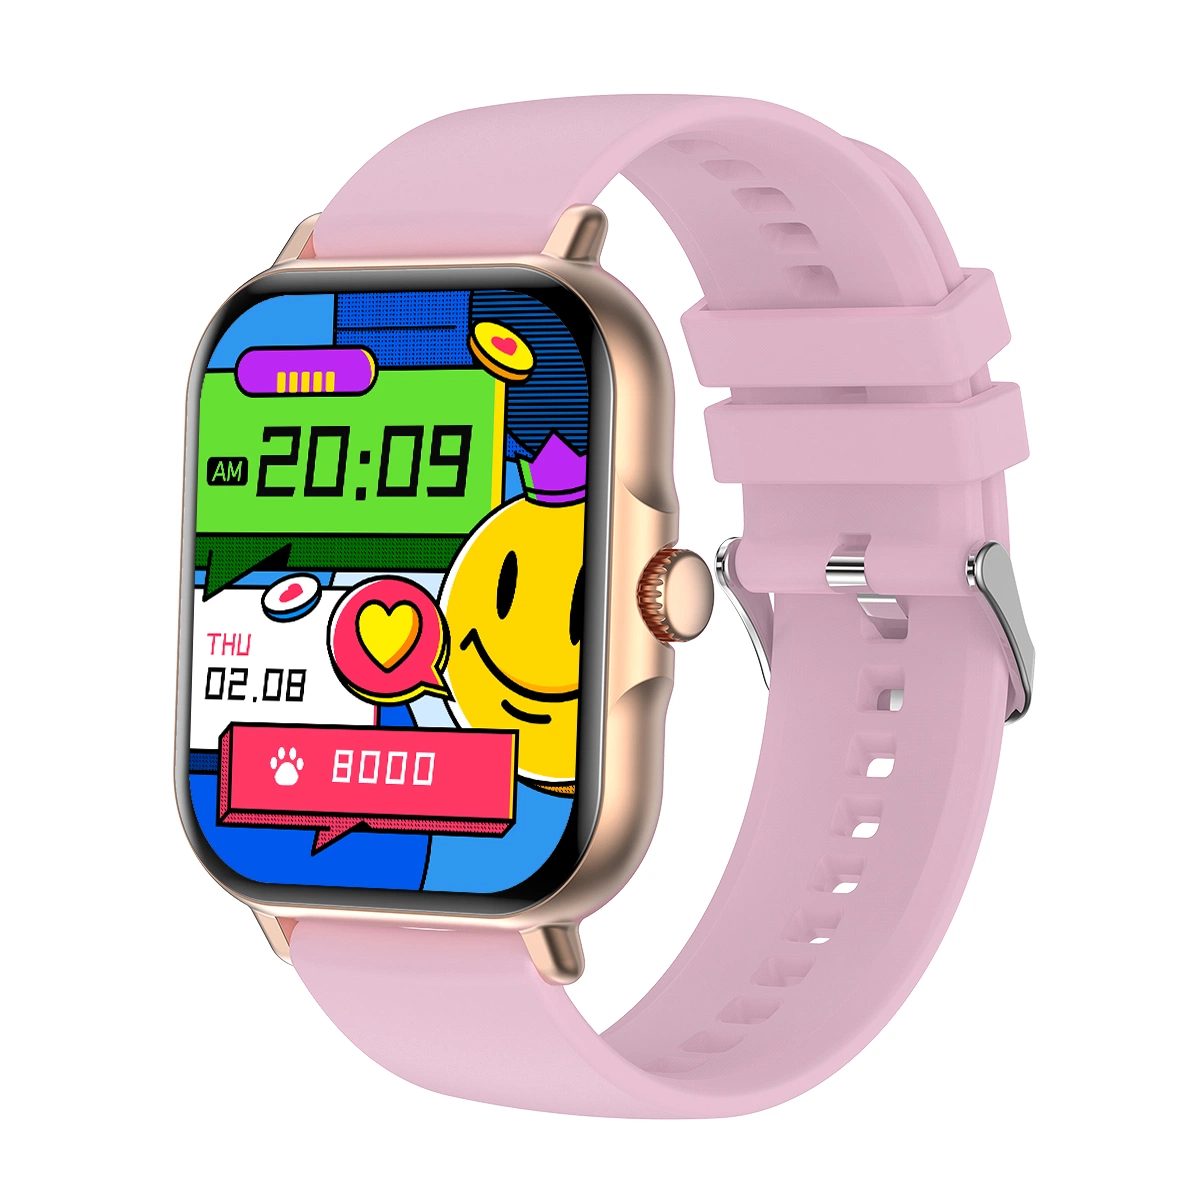 Relógio inteligente Bluetooth Smart com classificação IP67 com conformidade CE RoHS, Heart Rate, modo de pulso Relógios para telemóvel Apple iOS Android Ver Gift Touch Relógio digital com ecrã